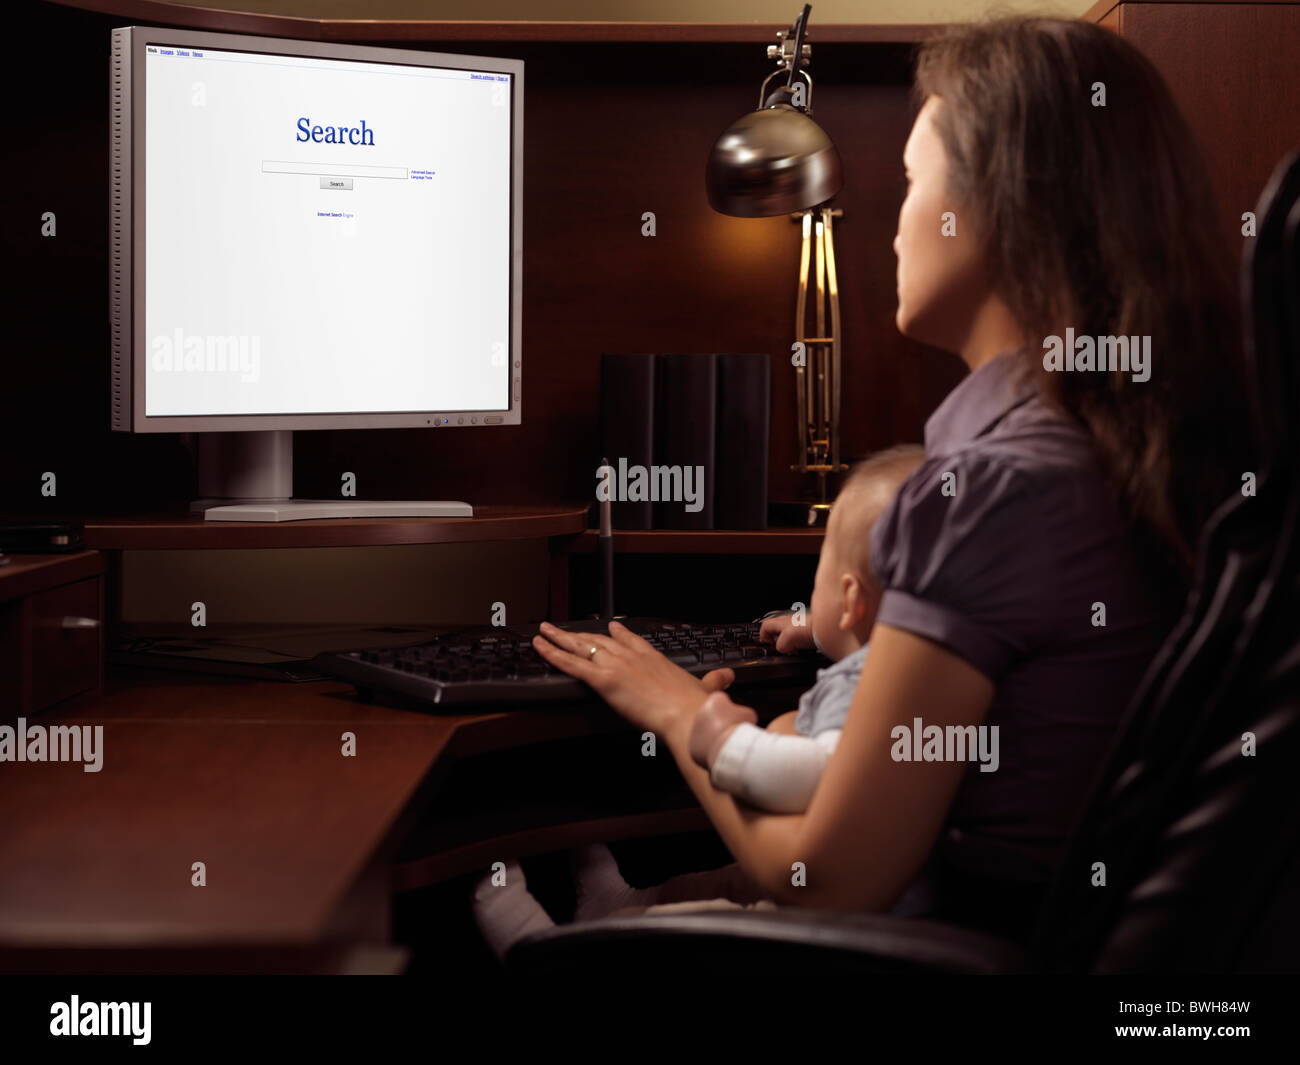 Giovane donna con un bambino seduti ad una scrivania per computer con internet motore di ricerca sul display Foto Stock